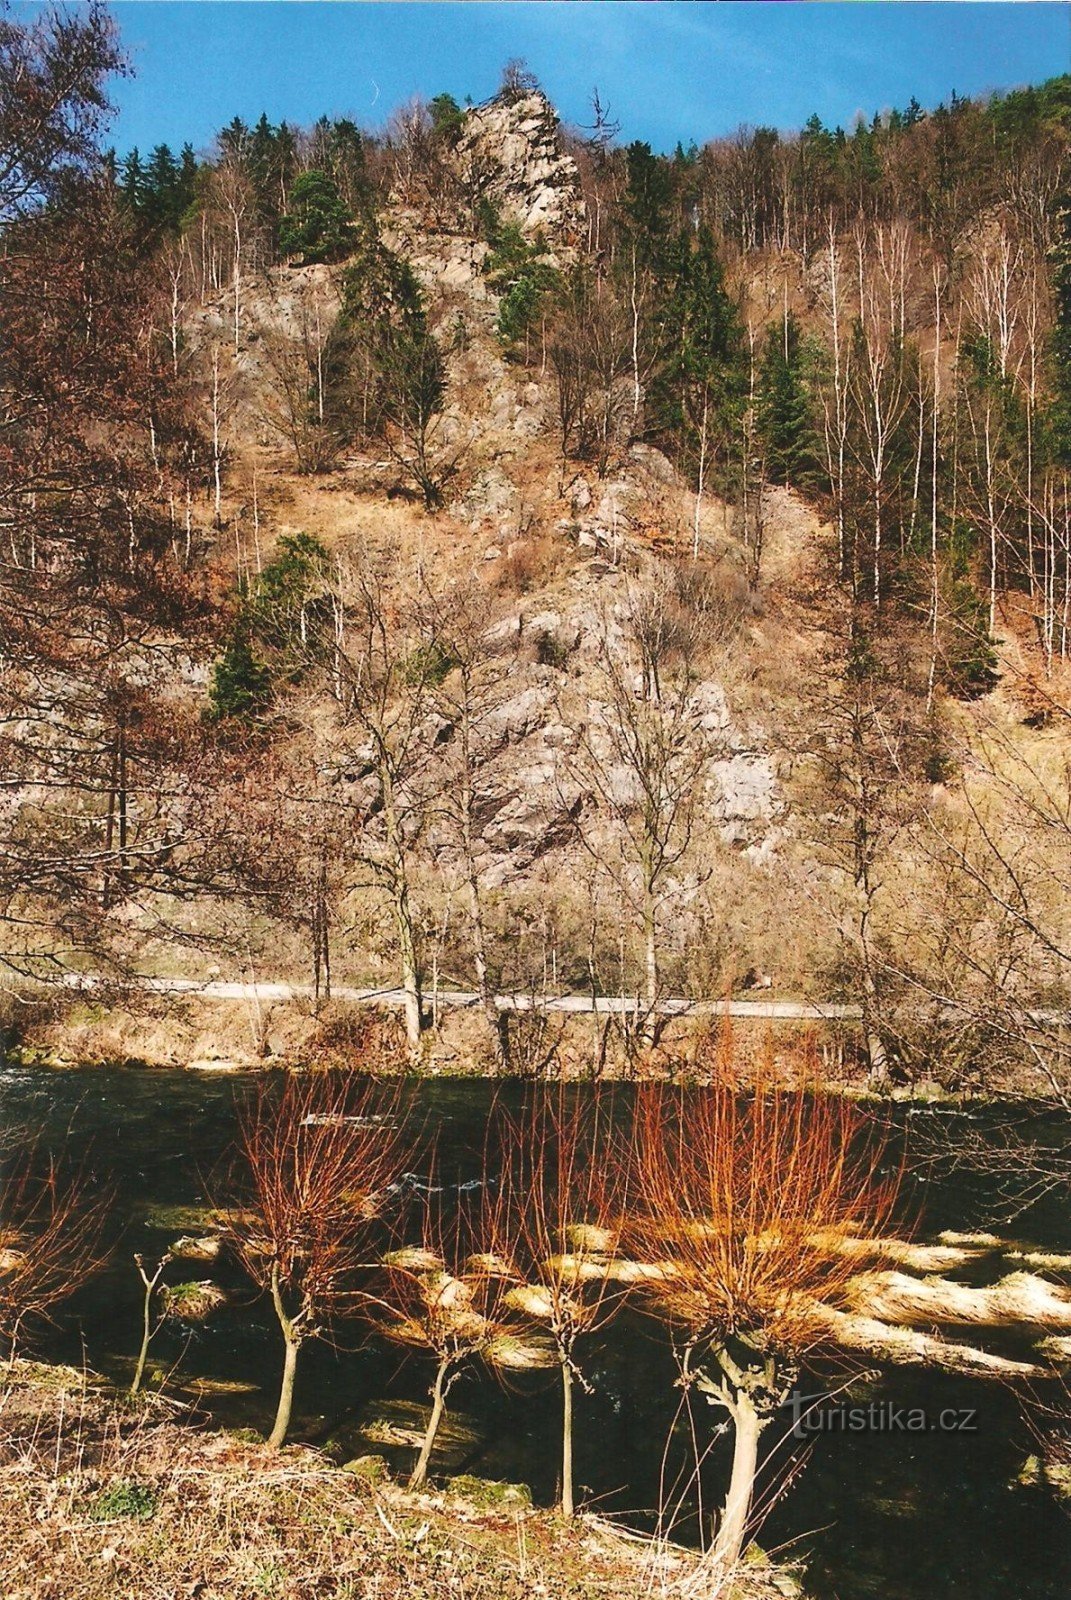 Rocaille de Vírská - Belvédère de Klubačice